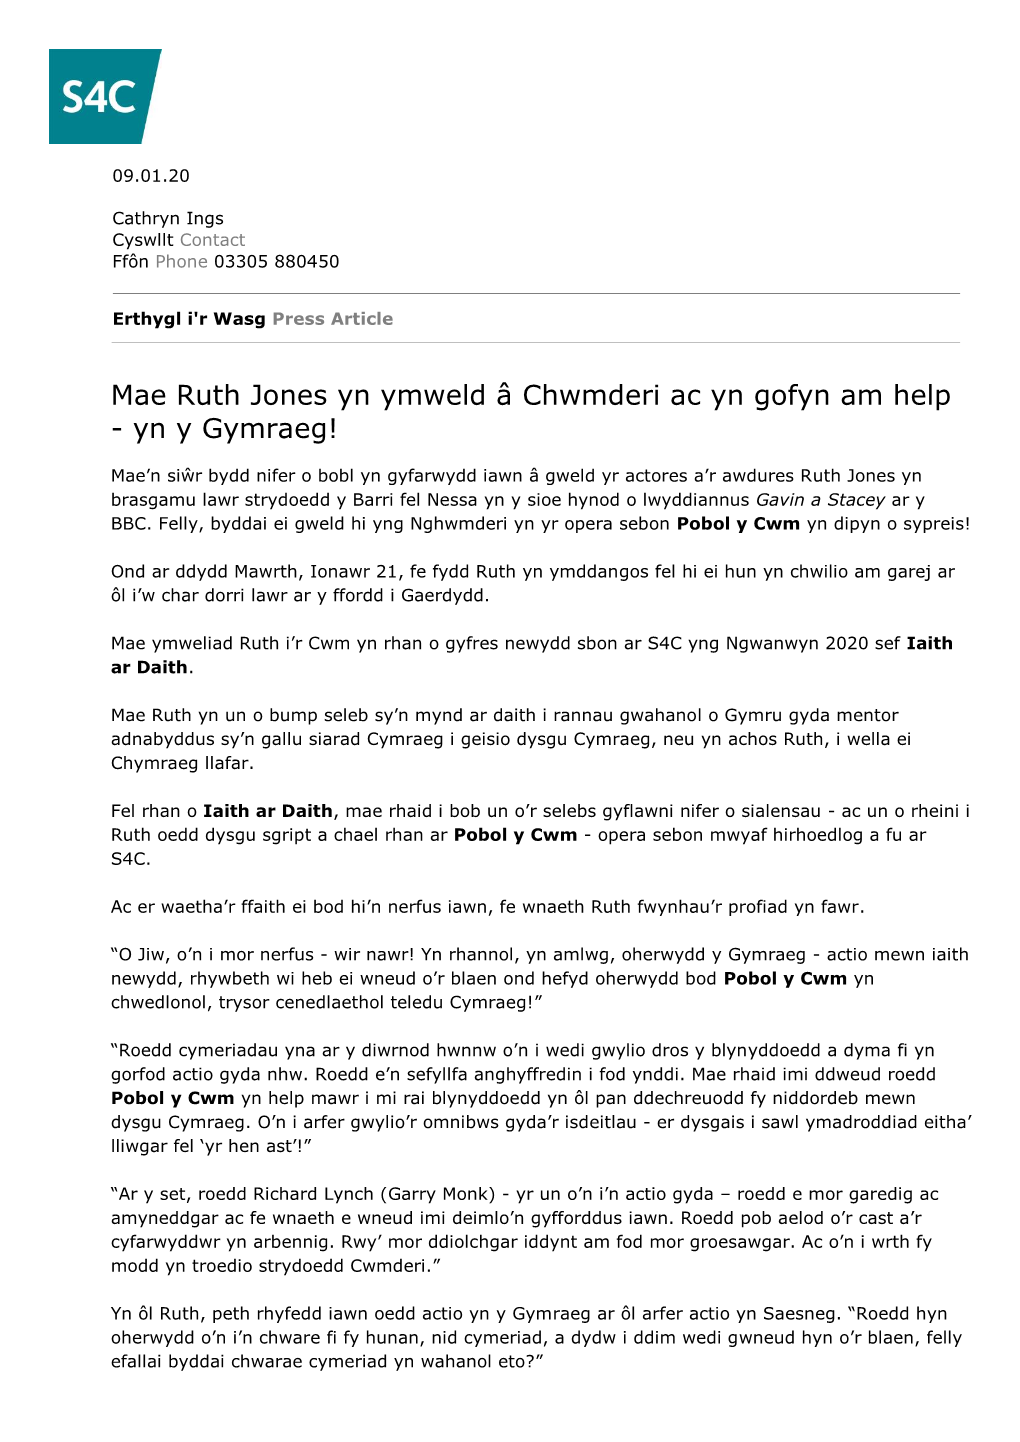 Mae Ruth Jones Yn Ymweld Â Chwmderi Ac Yn Gofyn Am Help - Yn Y Gymraeg!